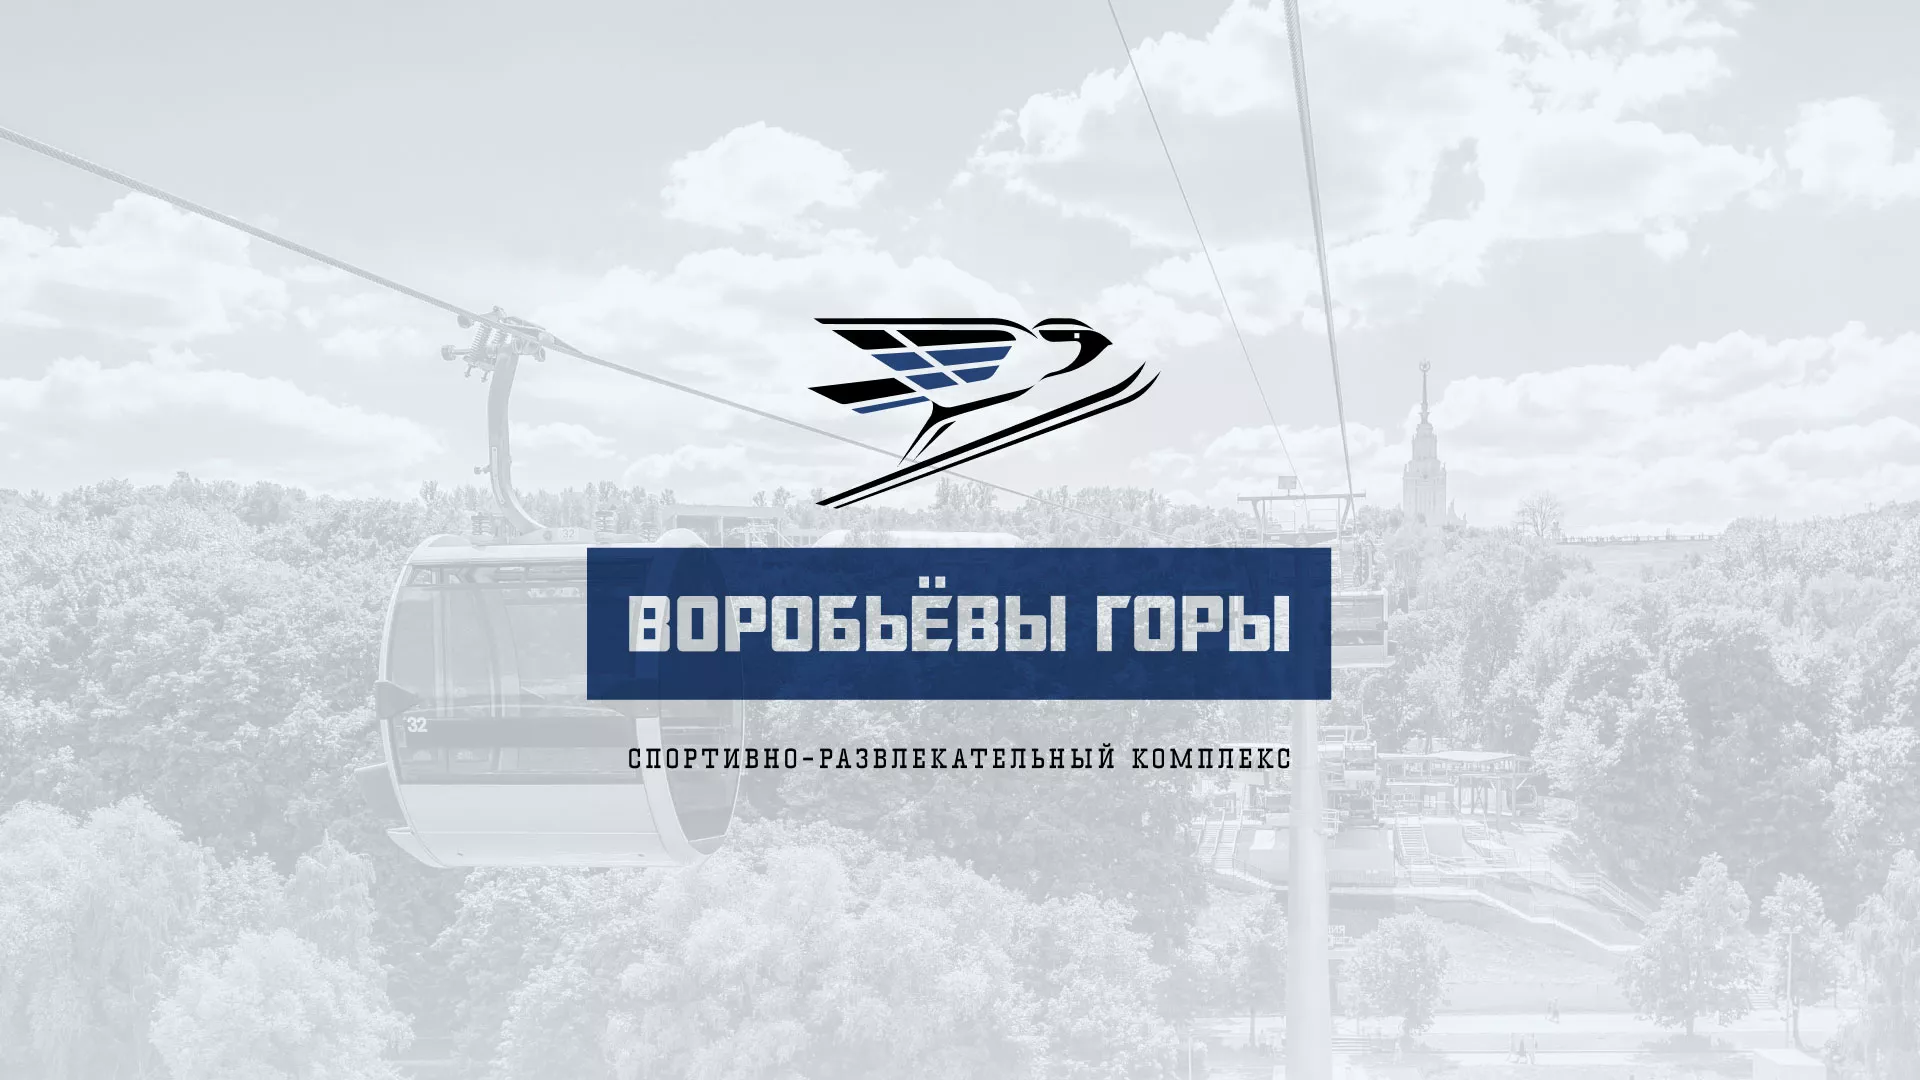 Разработка сайта в Костроме для спортивно-развлекательного комплекса «Воробьёвы горы»